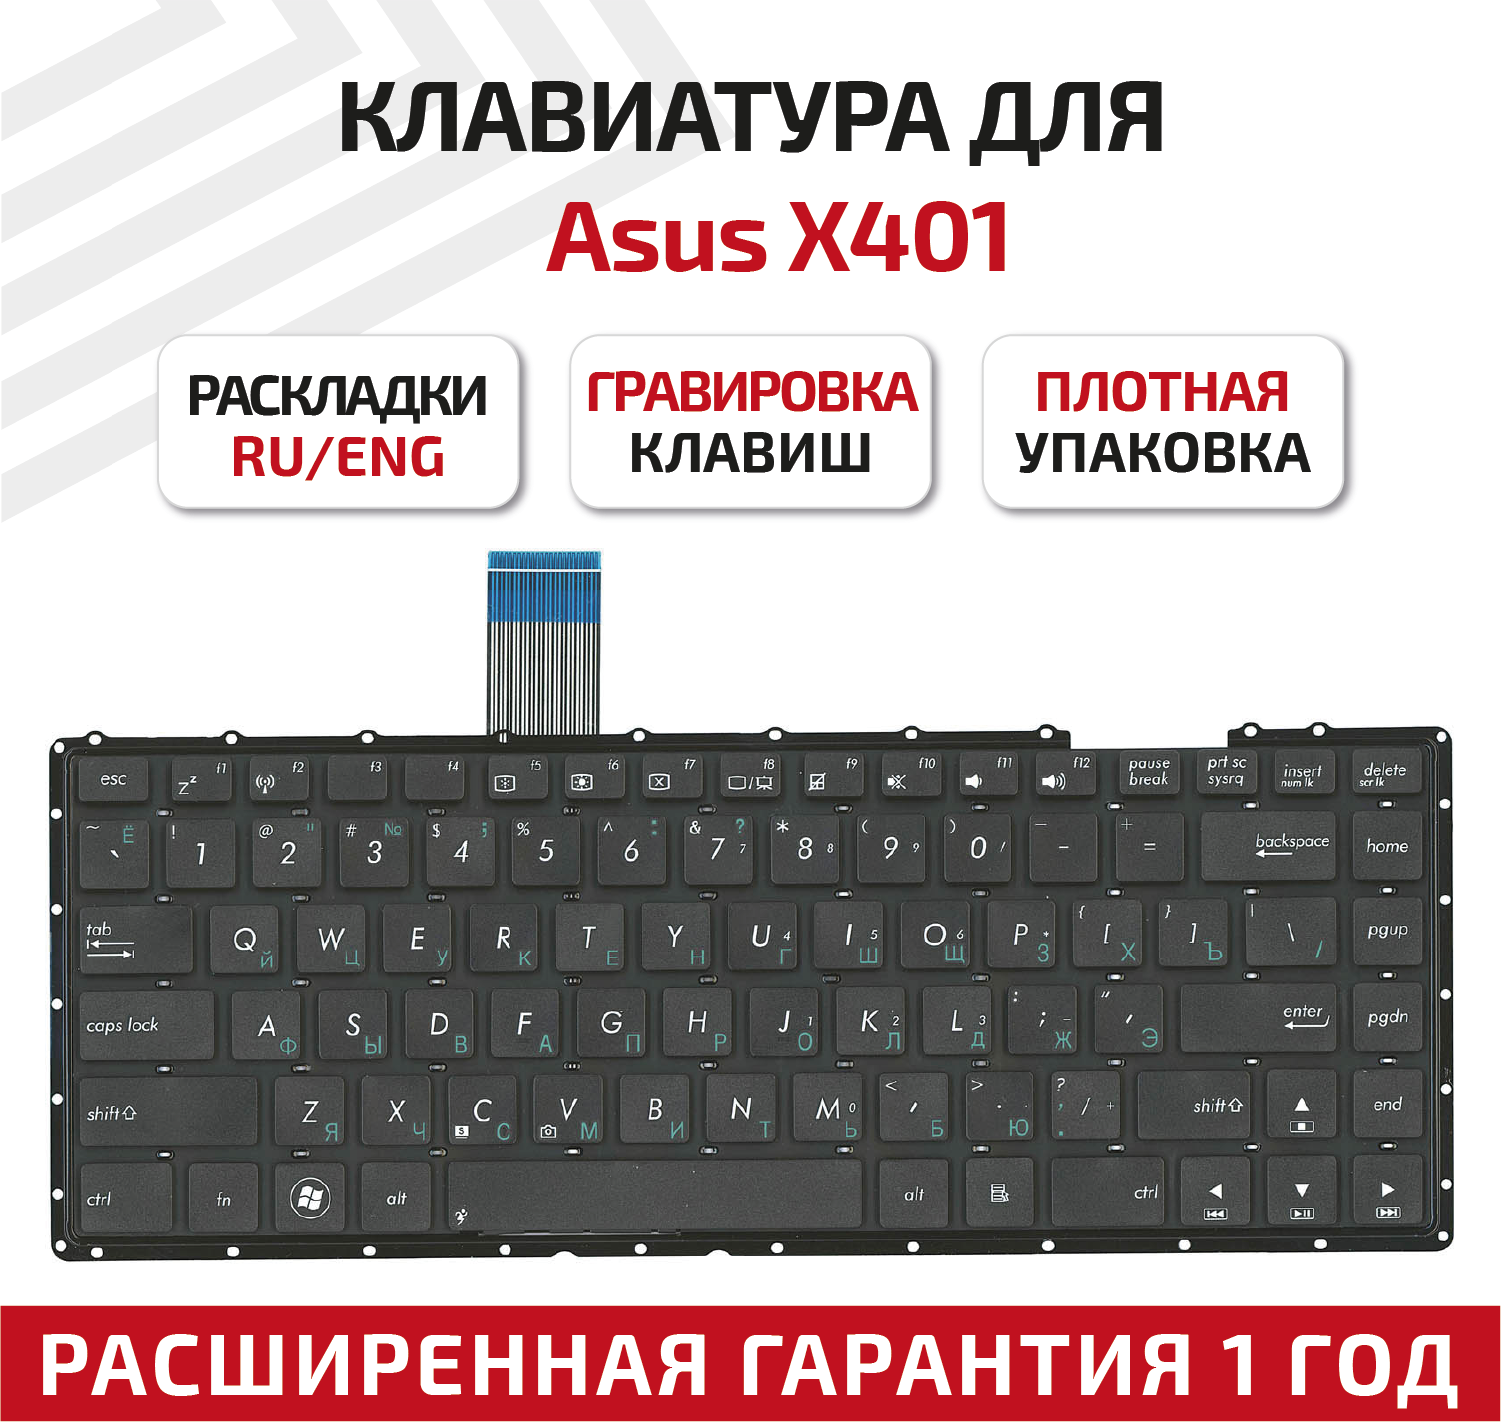 Клавиатура (keyboard) 13GN4O1AP030-1 для ноутбука Asus F401, F401A, F401U, X401, X401A, X401A-W, X401U, X401U-W, черная